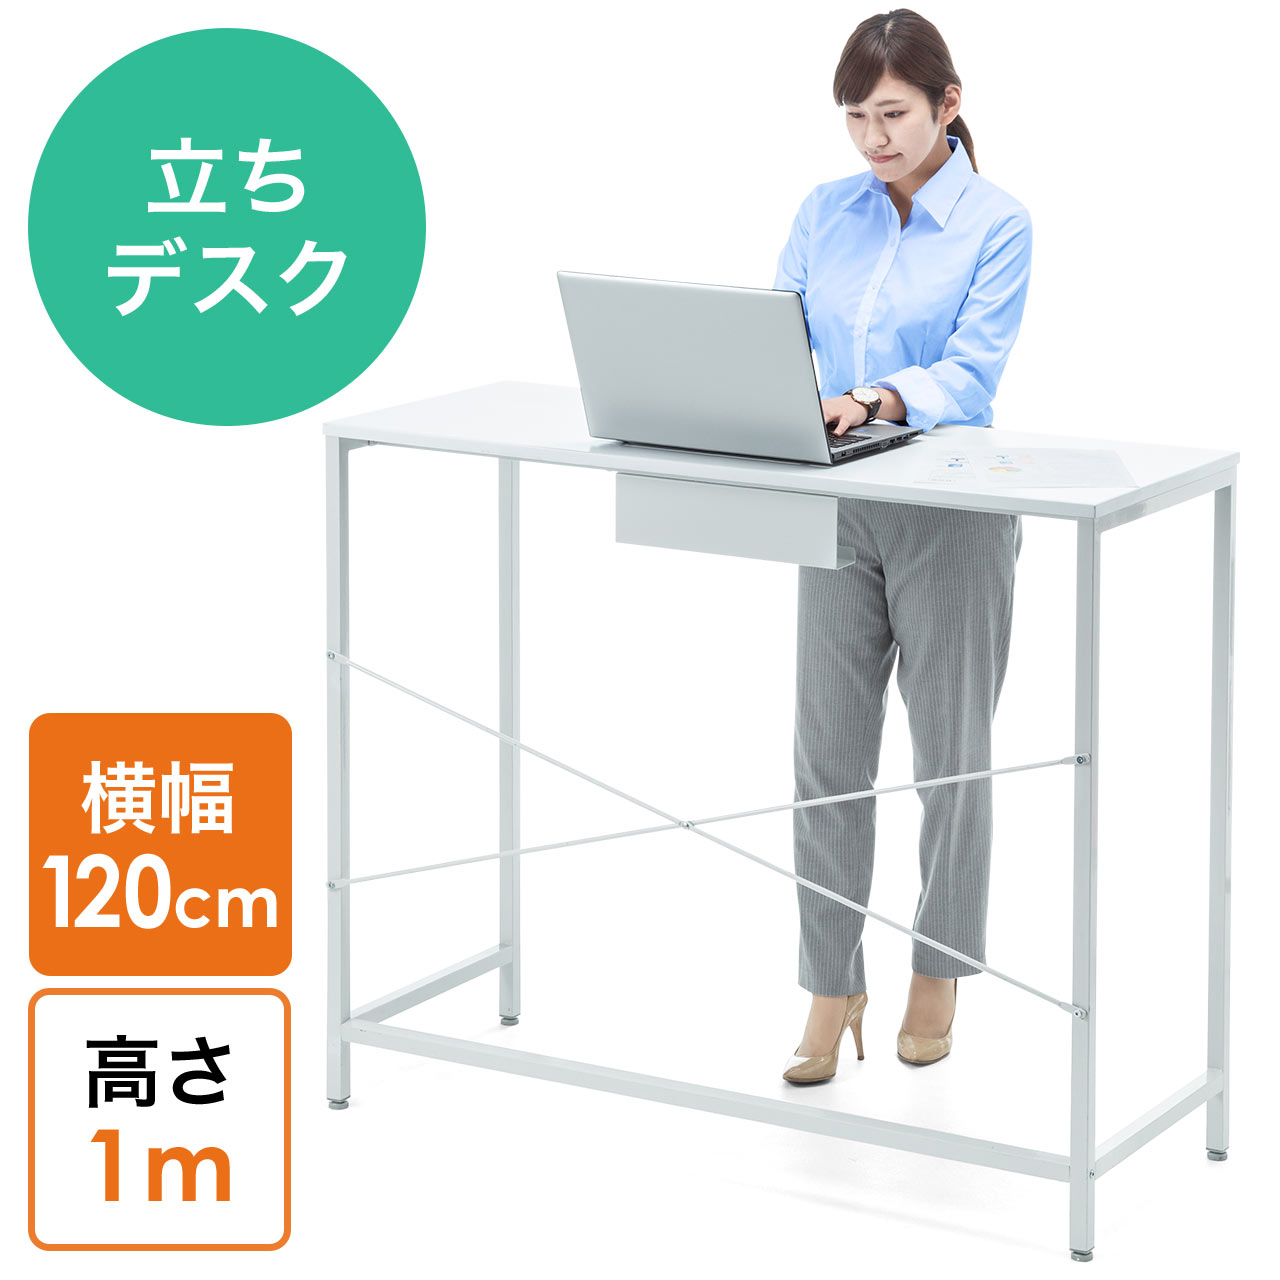 スタンディングデスク 立ちデスク スタンディングテーブル 高さ100cm 幅1cm 立ち作業 100 Deskf010の販売商品 通販ならサンワダイレクト